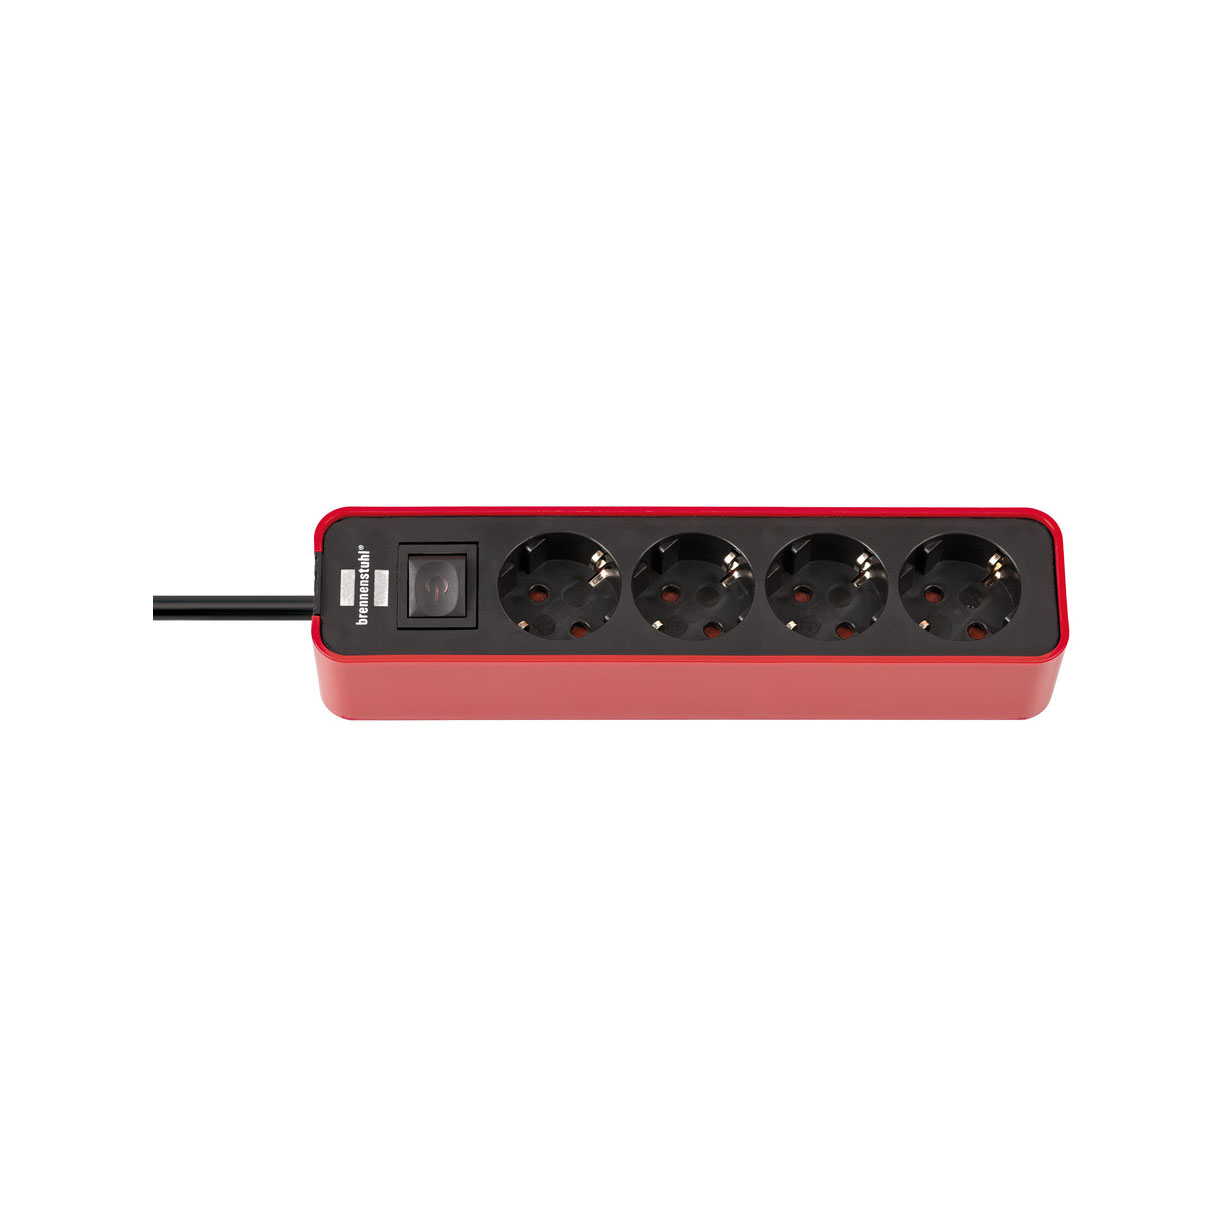 Удлинитель Brennenstuhl Ecolor с переключателем 4 розетки кабель 1,5 м H05VV-F 3G1,5 черно-красный 1153240070